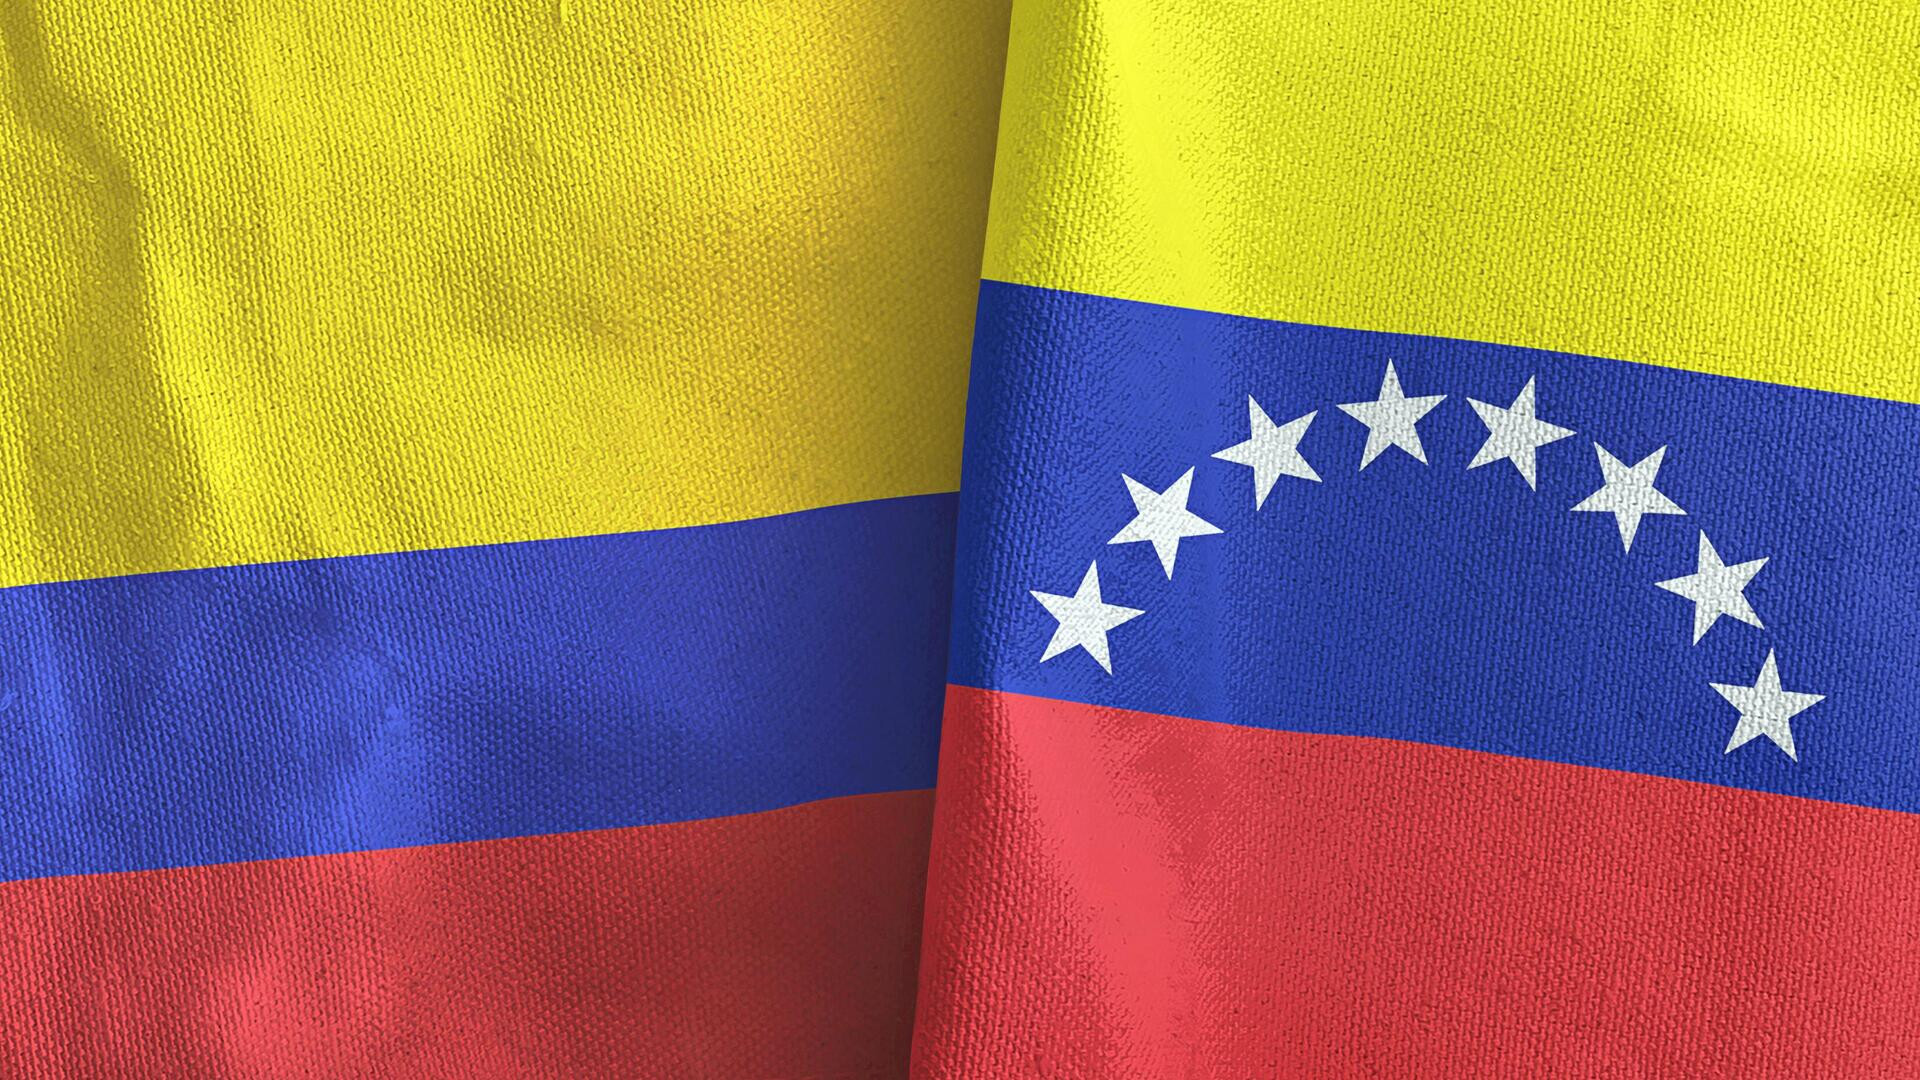 колумбия флаг и герб